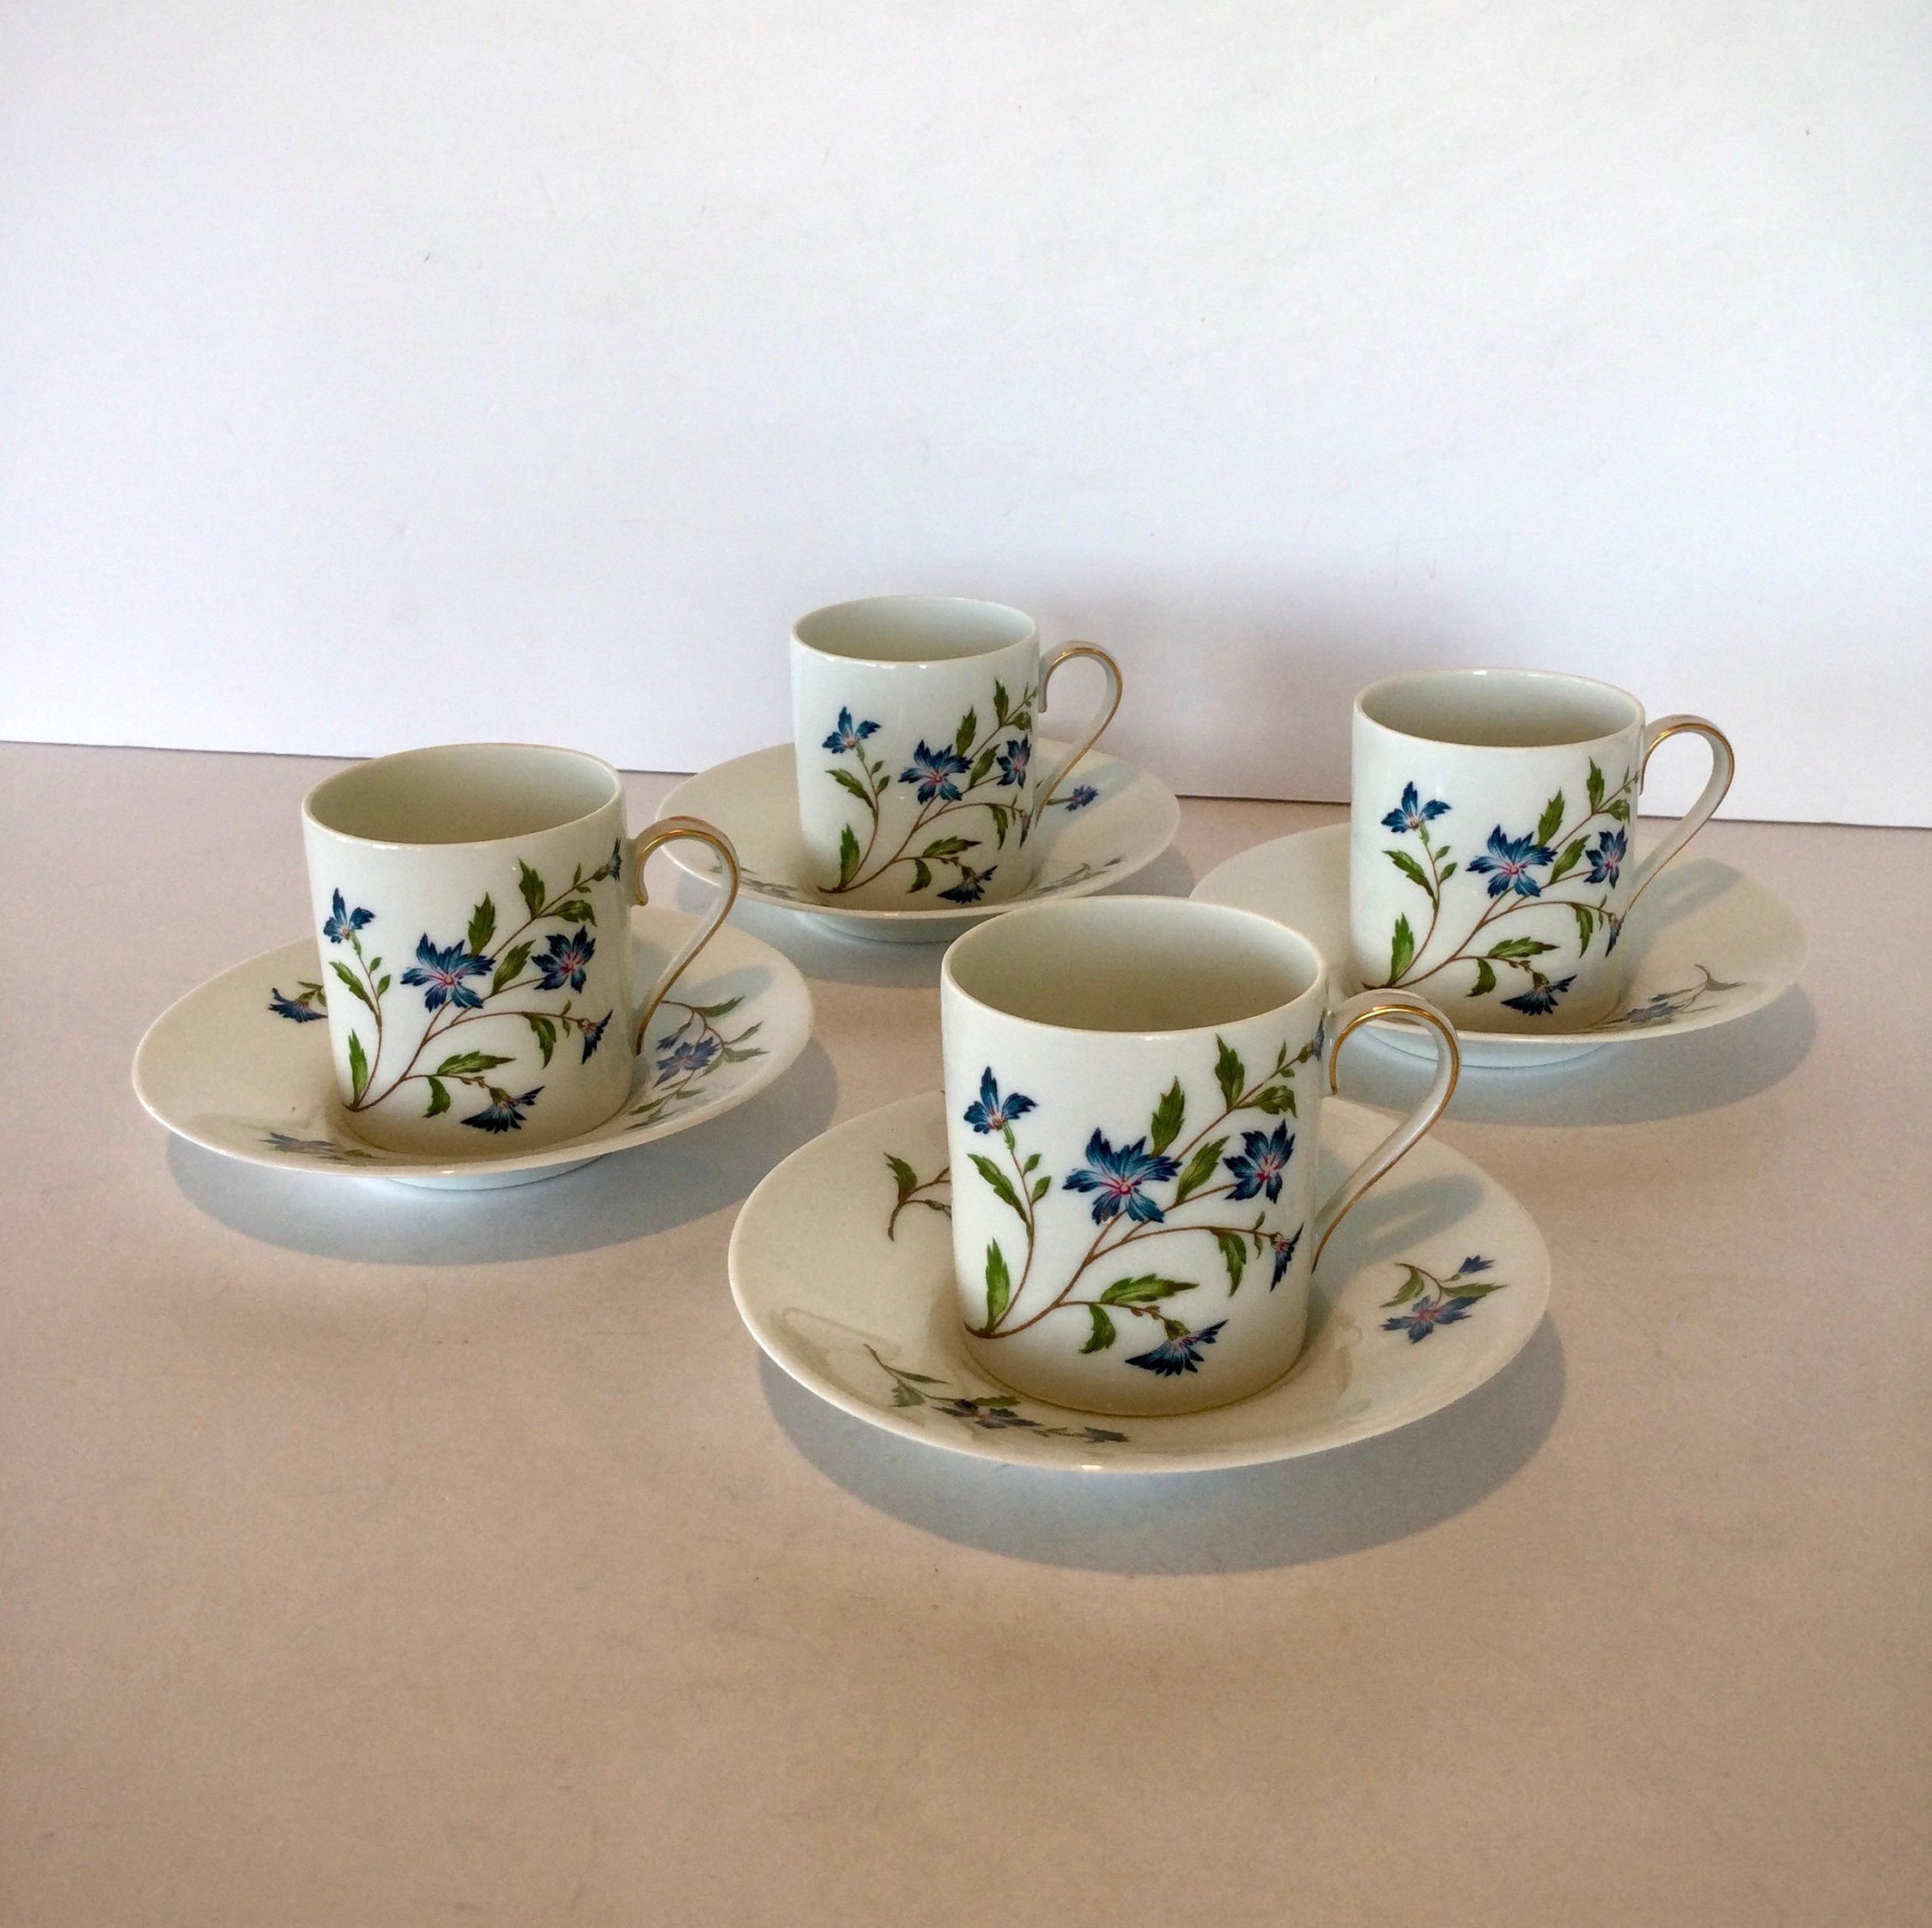 J.L Coquet Hémisphère Marine Blue double espresso cup, white cup